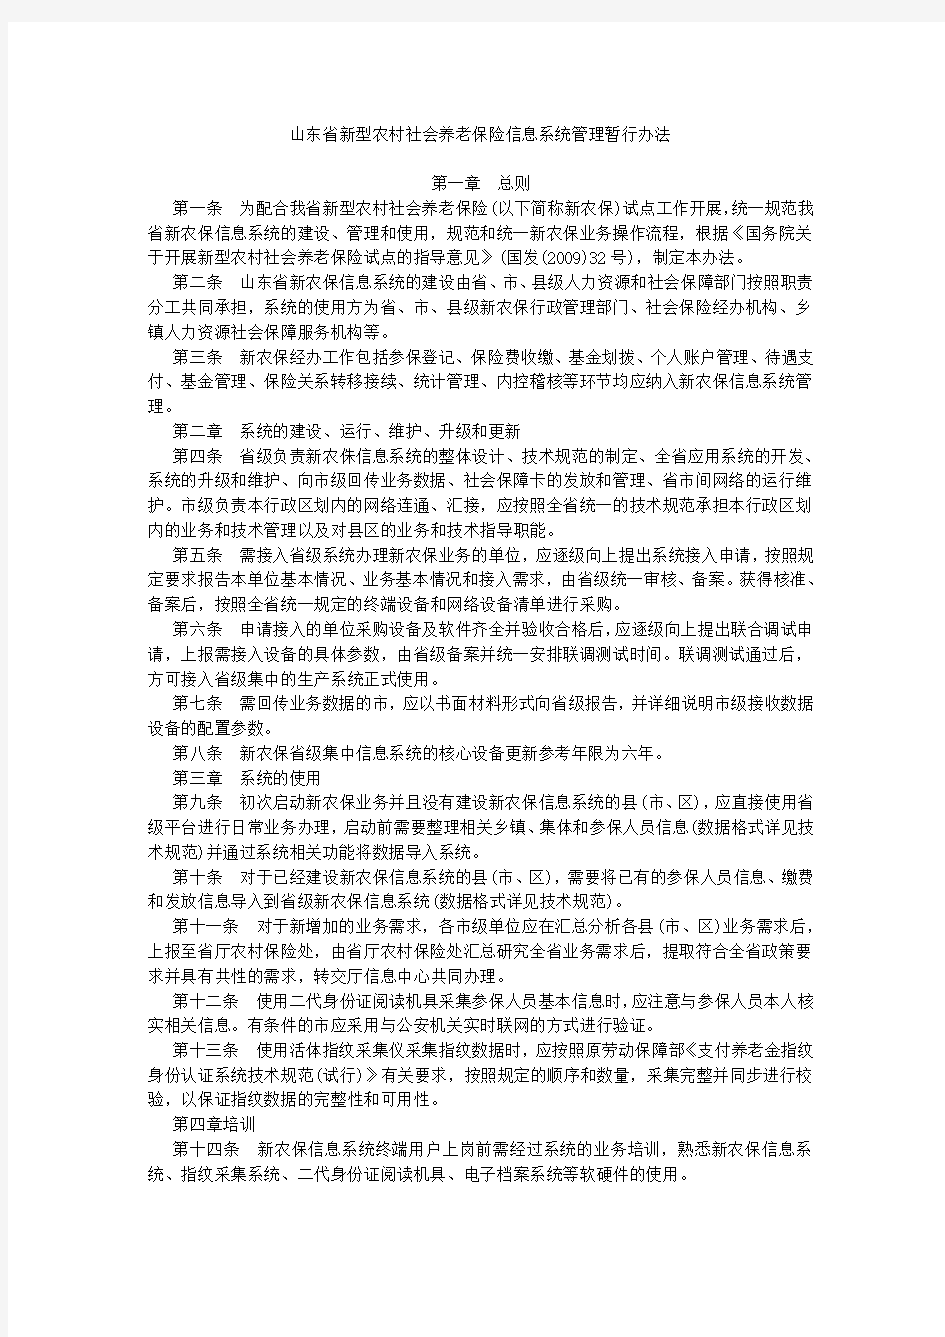 山东省新型农村社会养老保险信息系统管理暂行办法